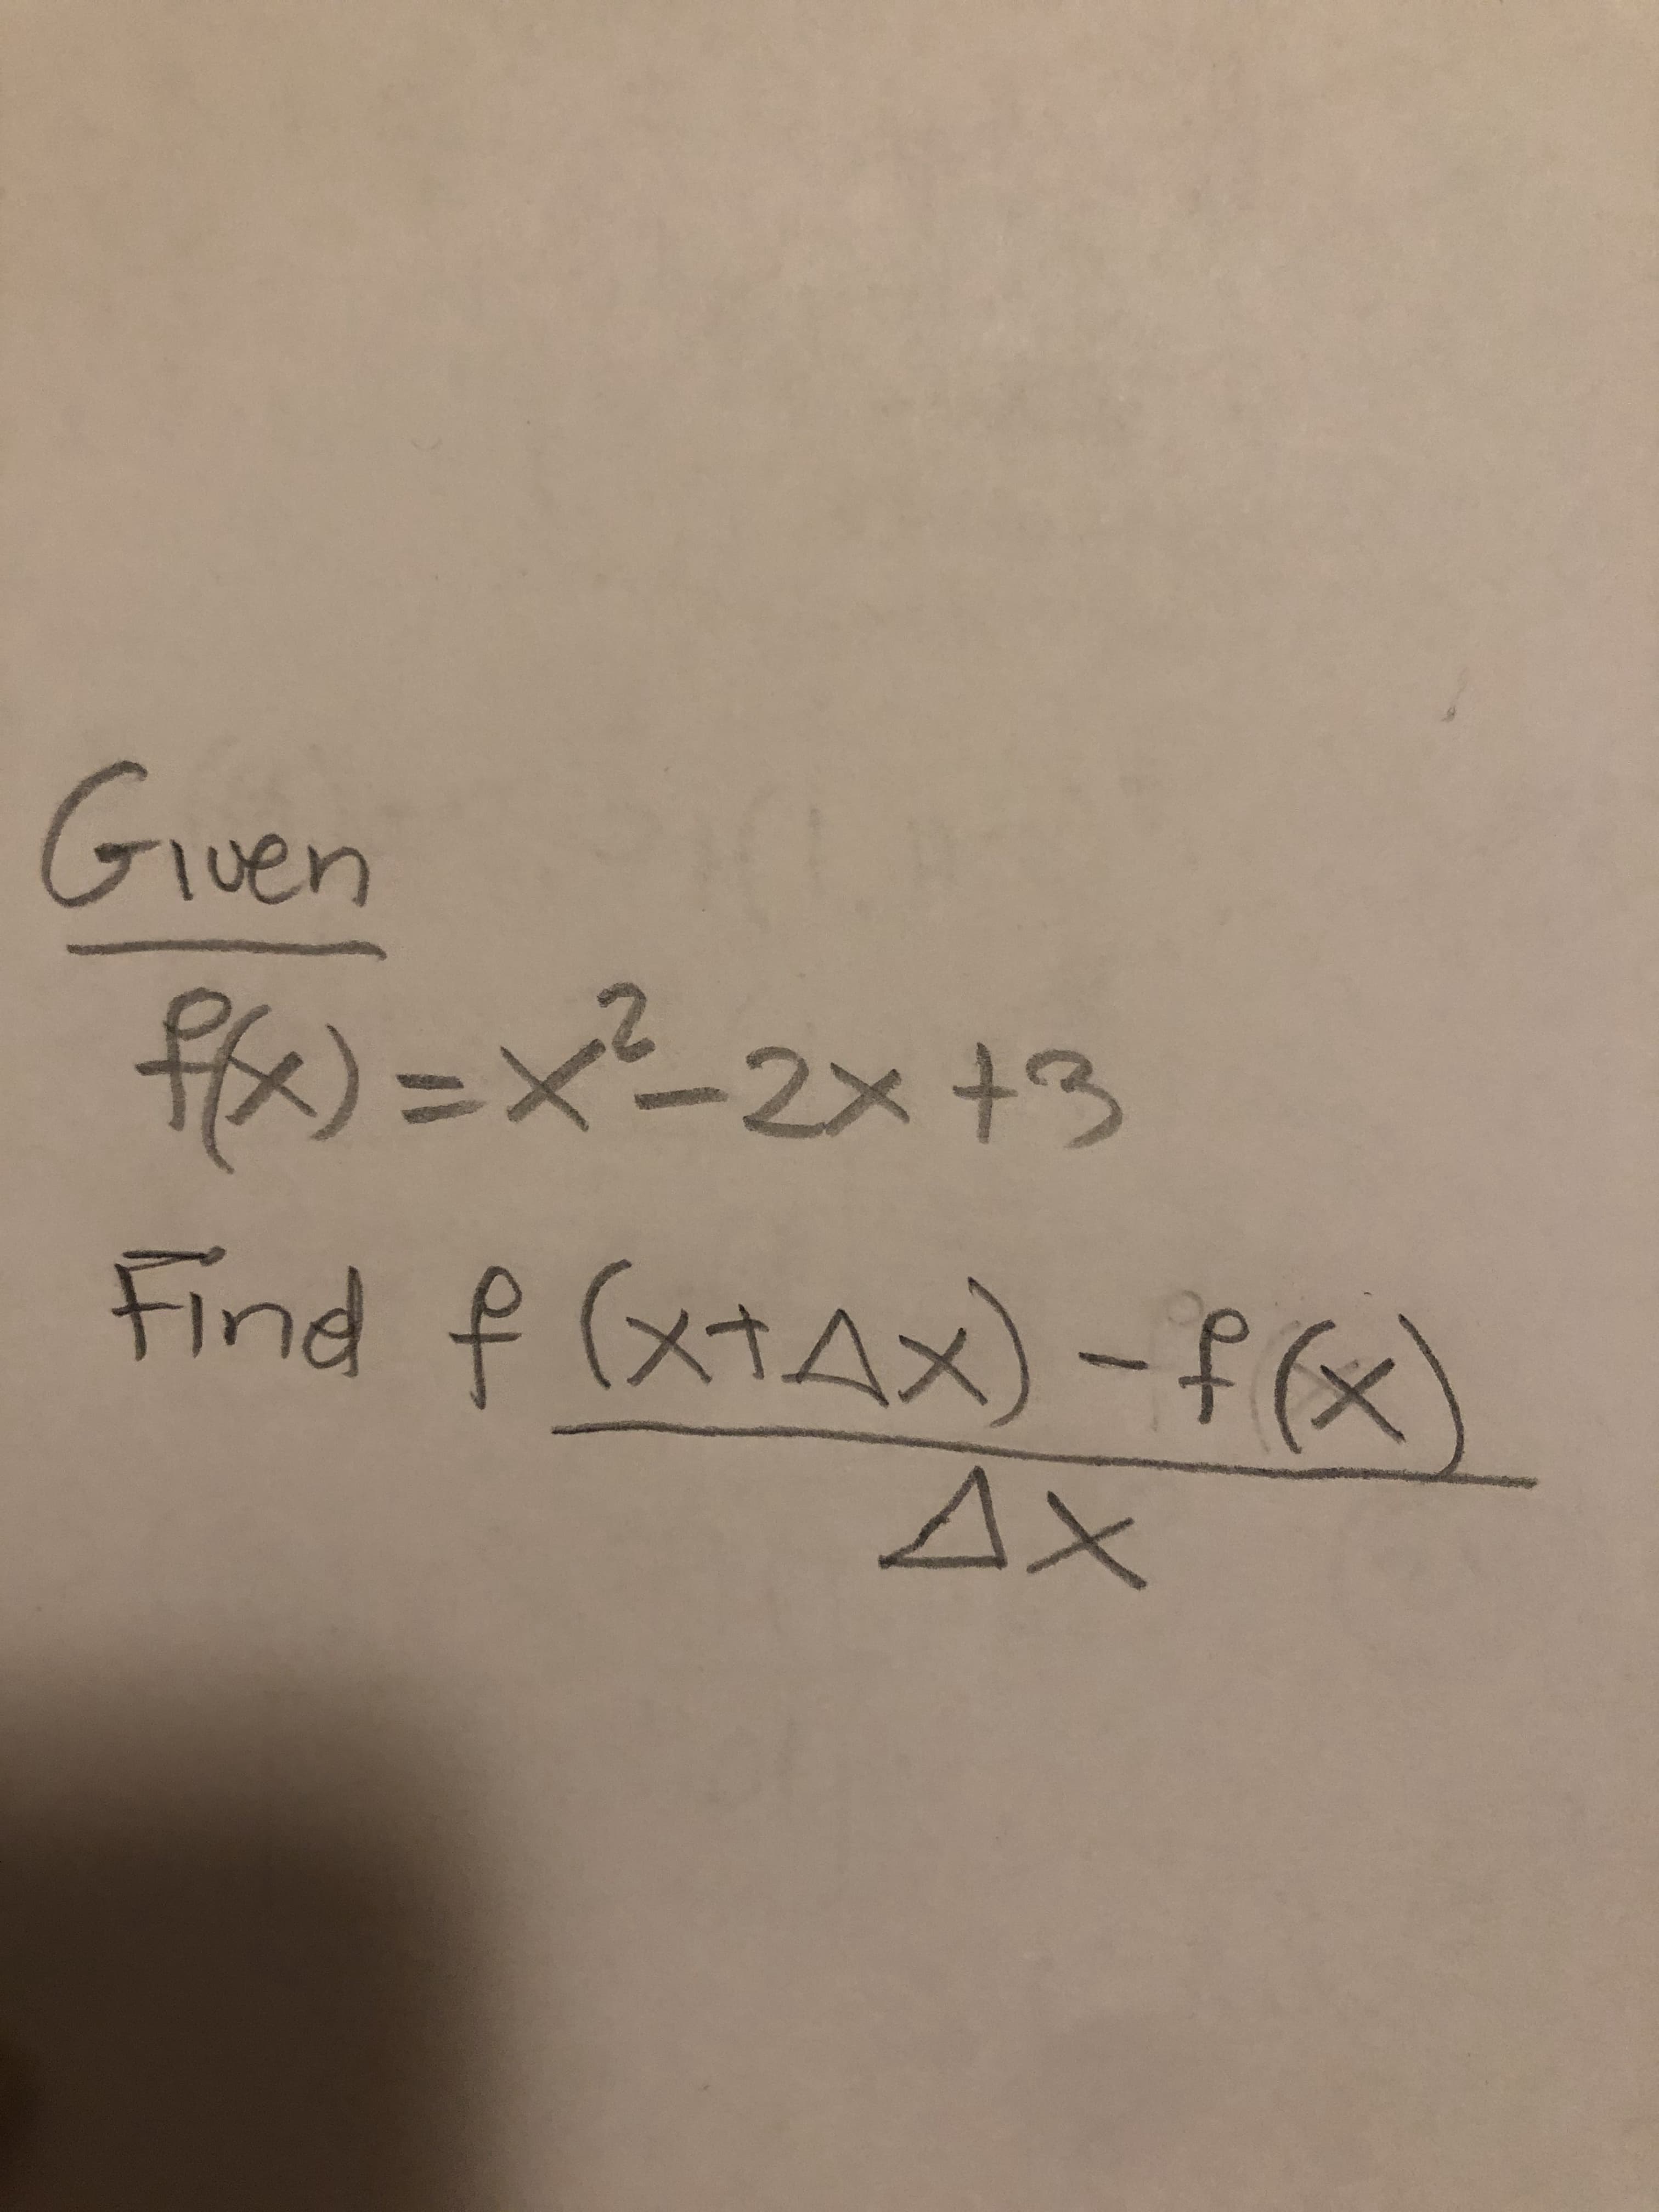 Guen
)=xー2x+3
Find f (xtAx) -f(x)
